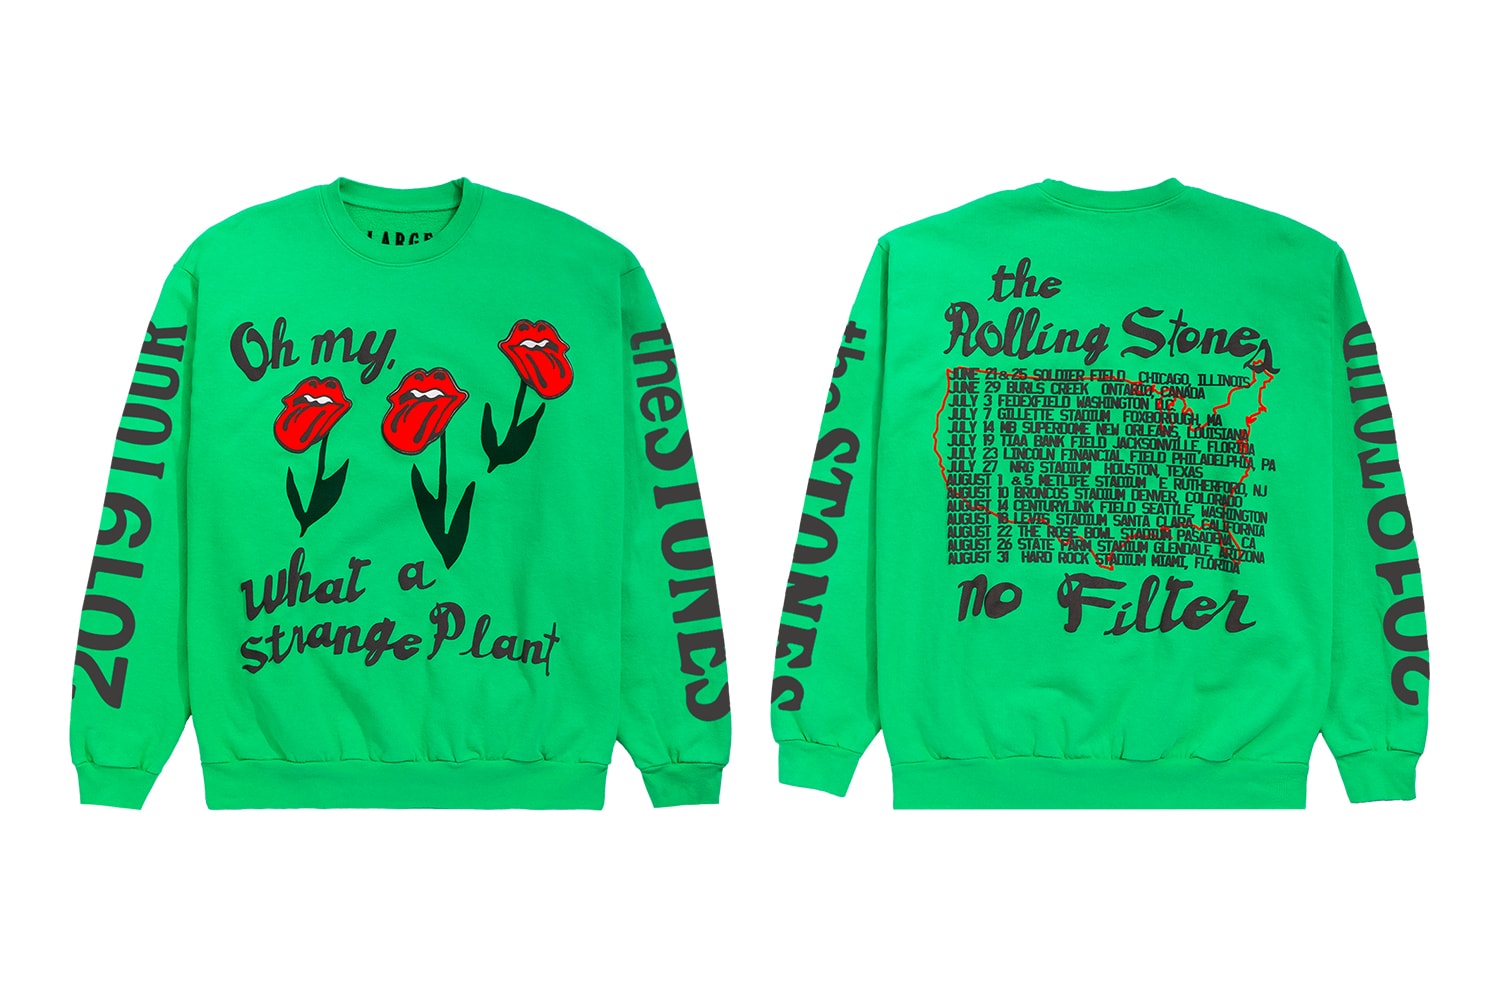 캑터스 플랜트 플리 마켓, 롤링 스톤즈 2019 투어를 위한 티셔츠 컬렉션